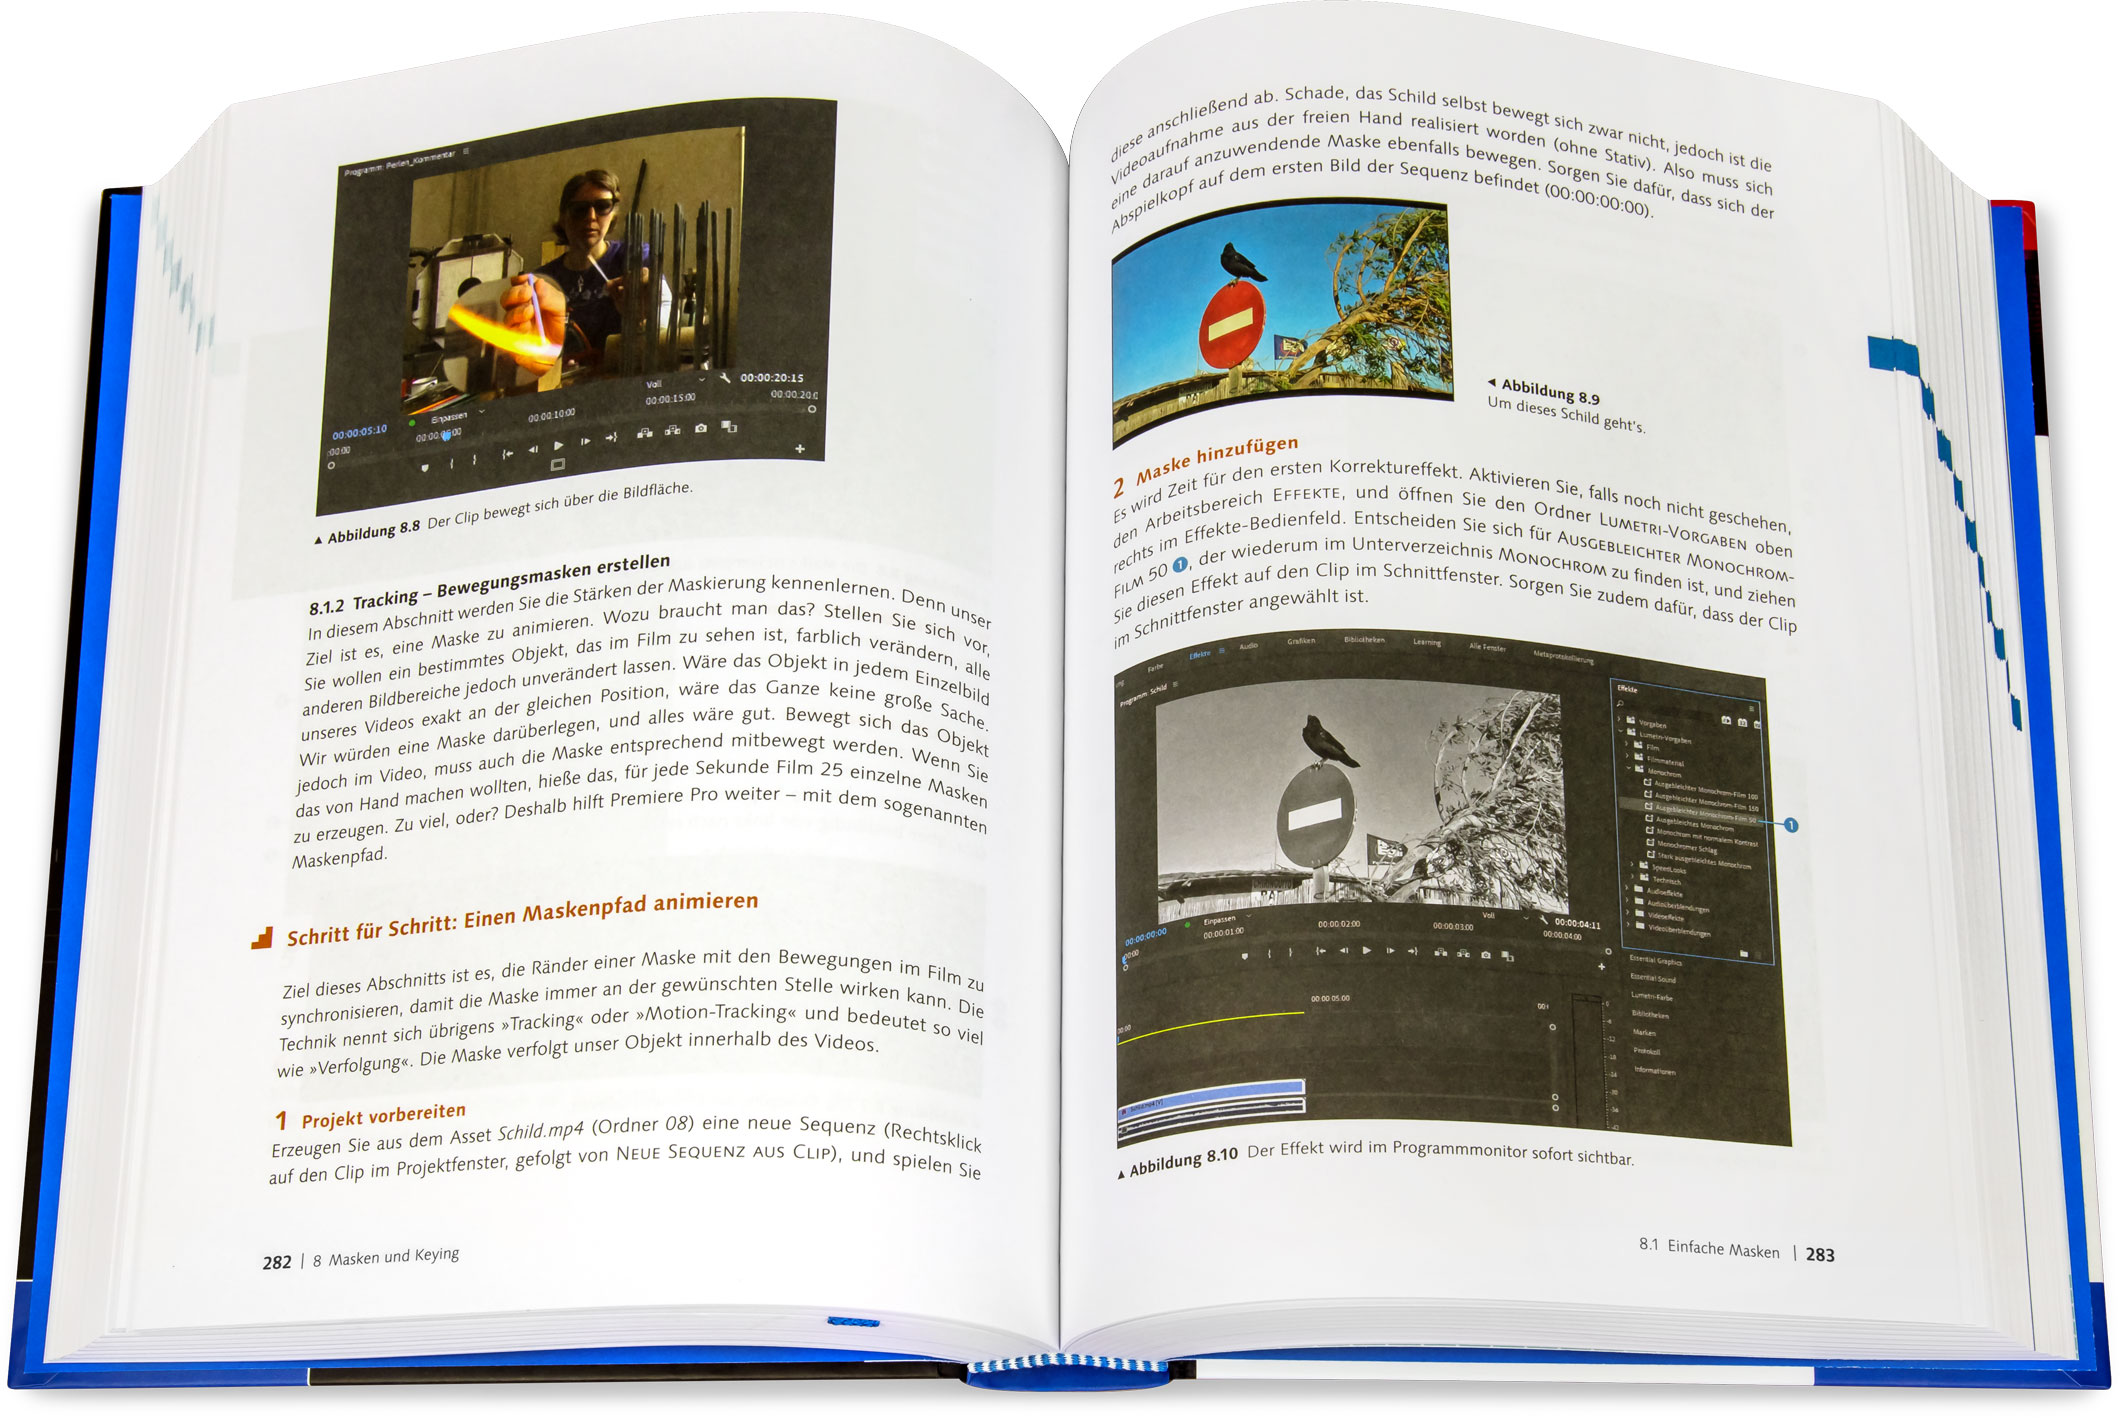 Blick ins Buch: Adobe Premiere Pro - Das umfassende Handbuch